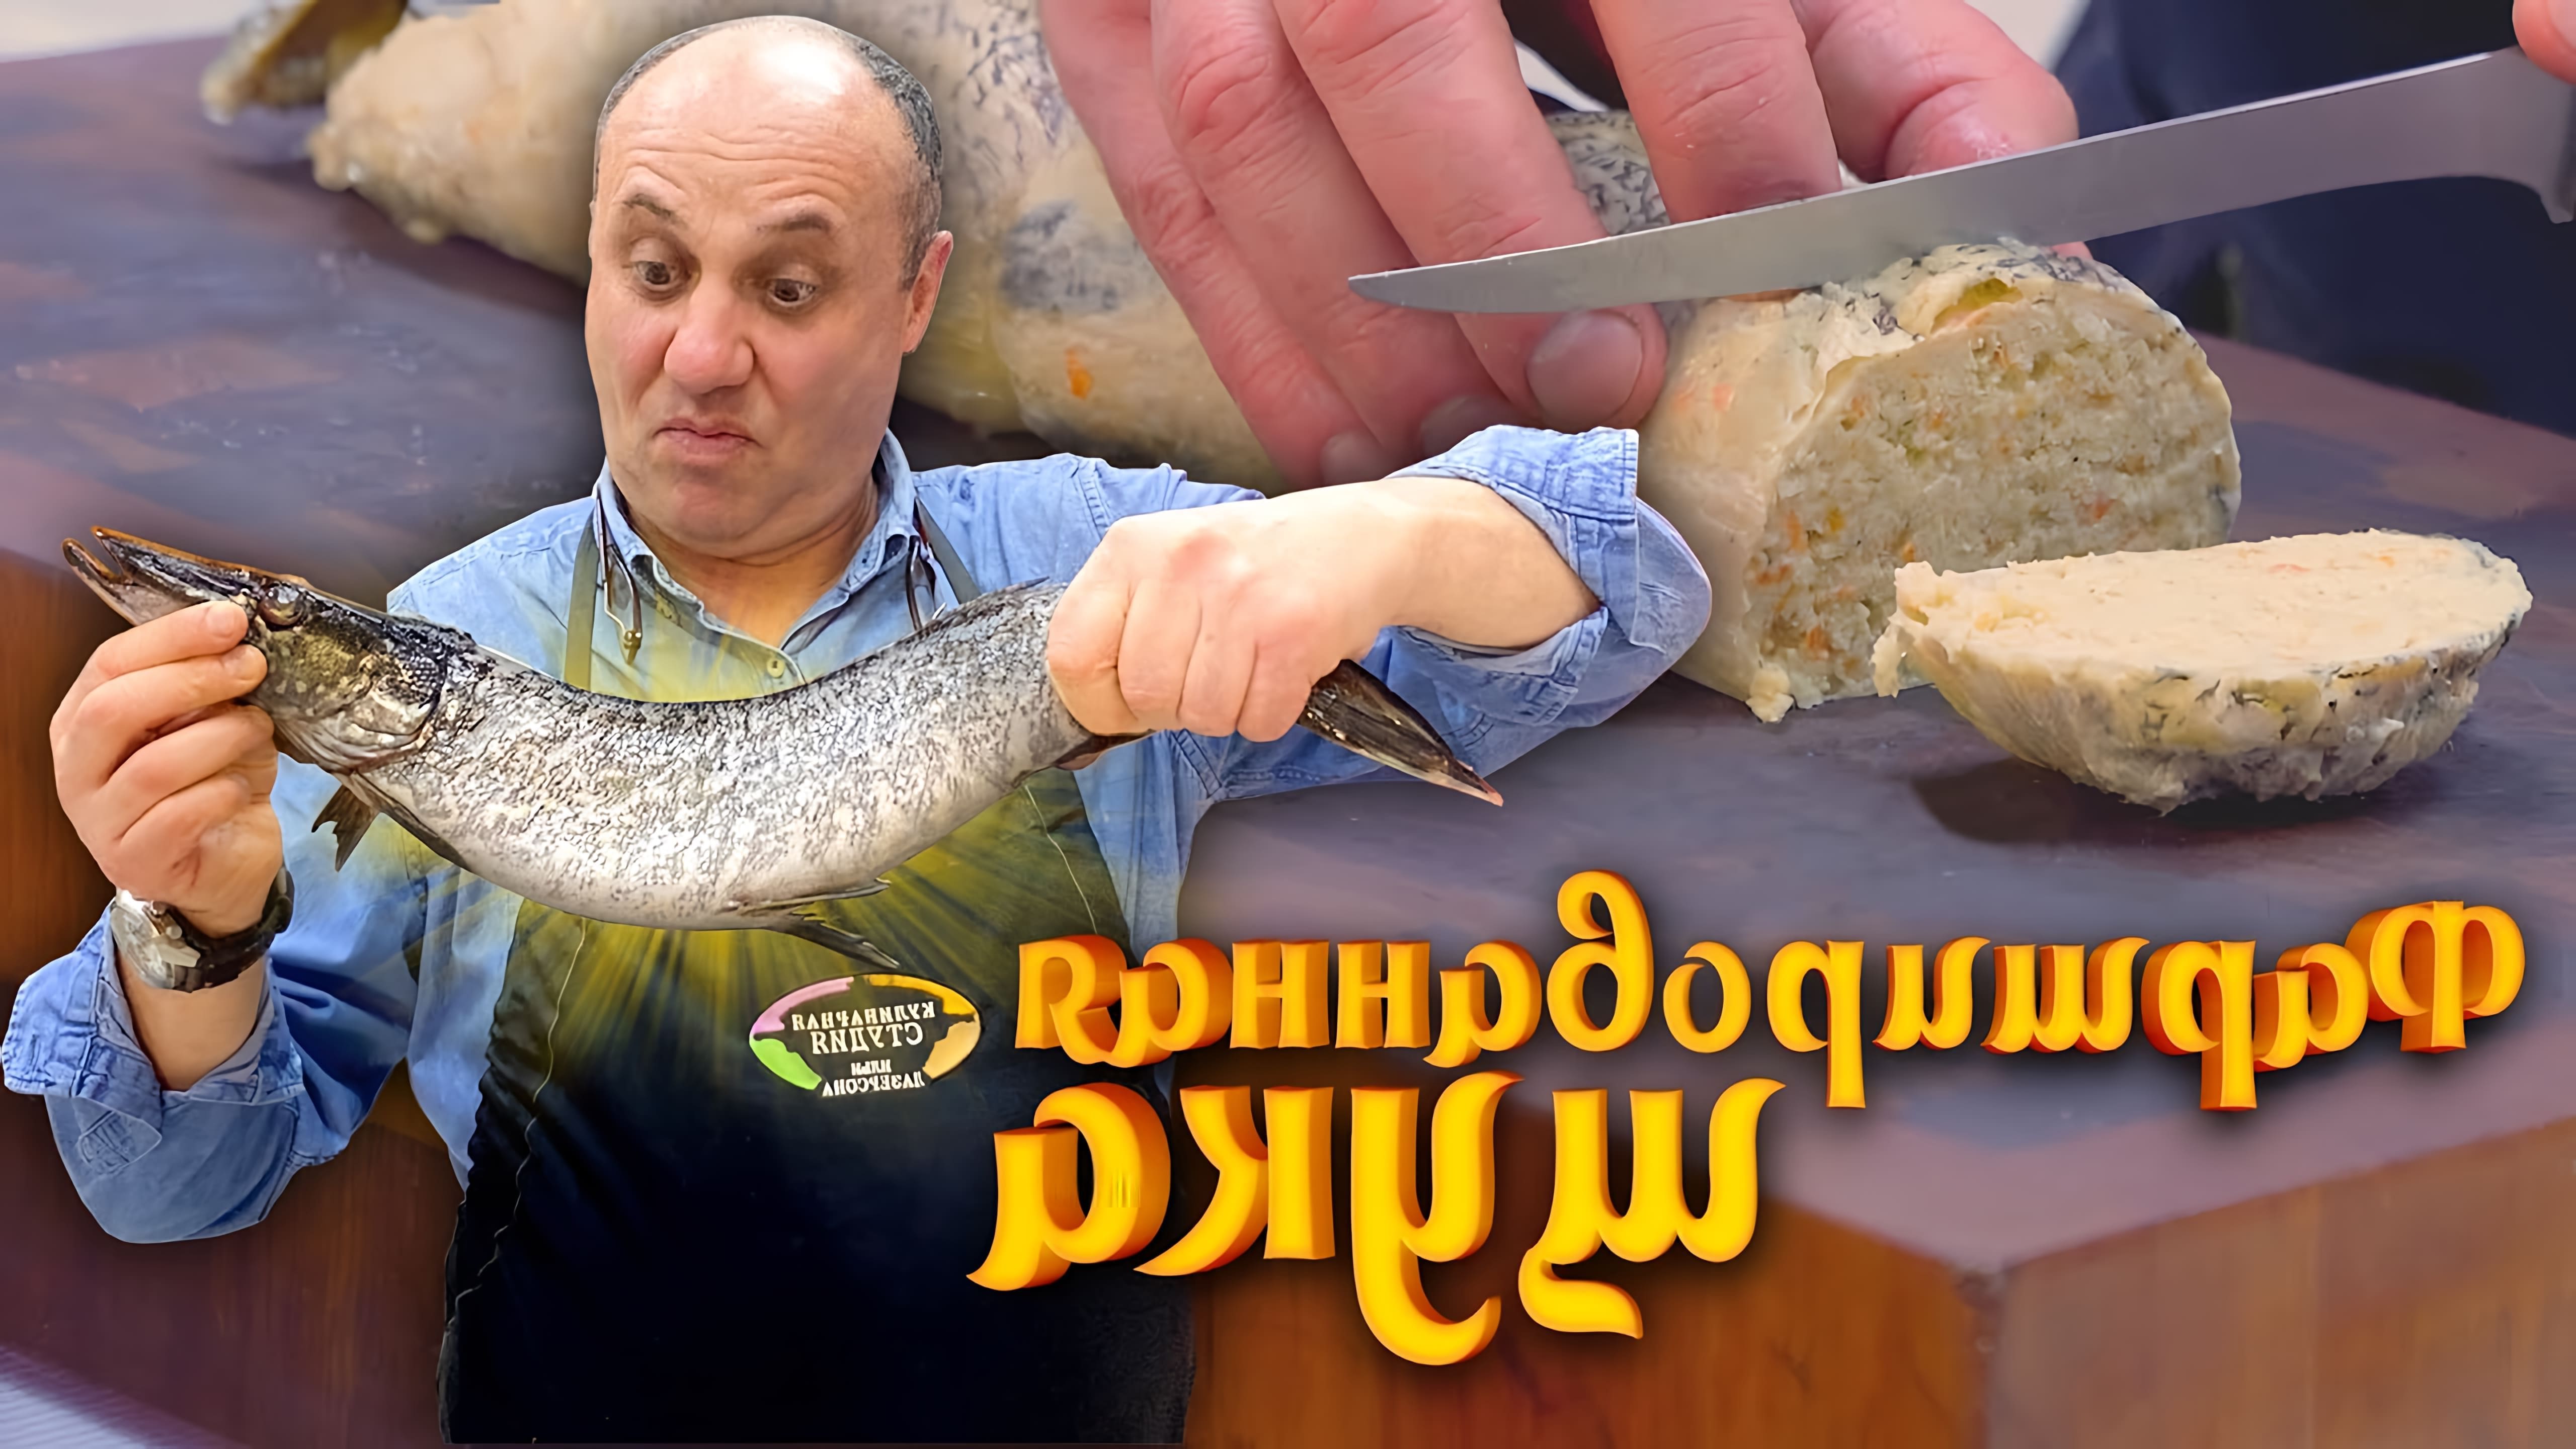 В этом видео демонстрируется процесс приготовления фаршированной щуки, известного еврейского блюда